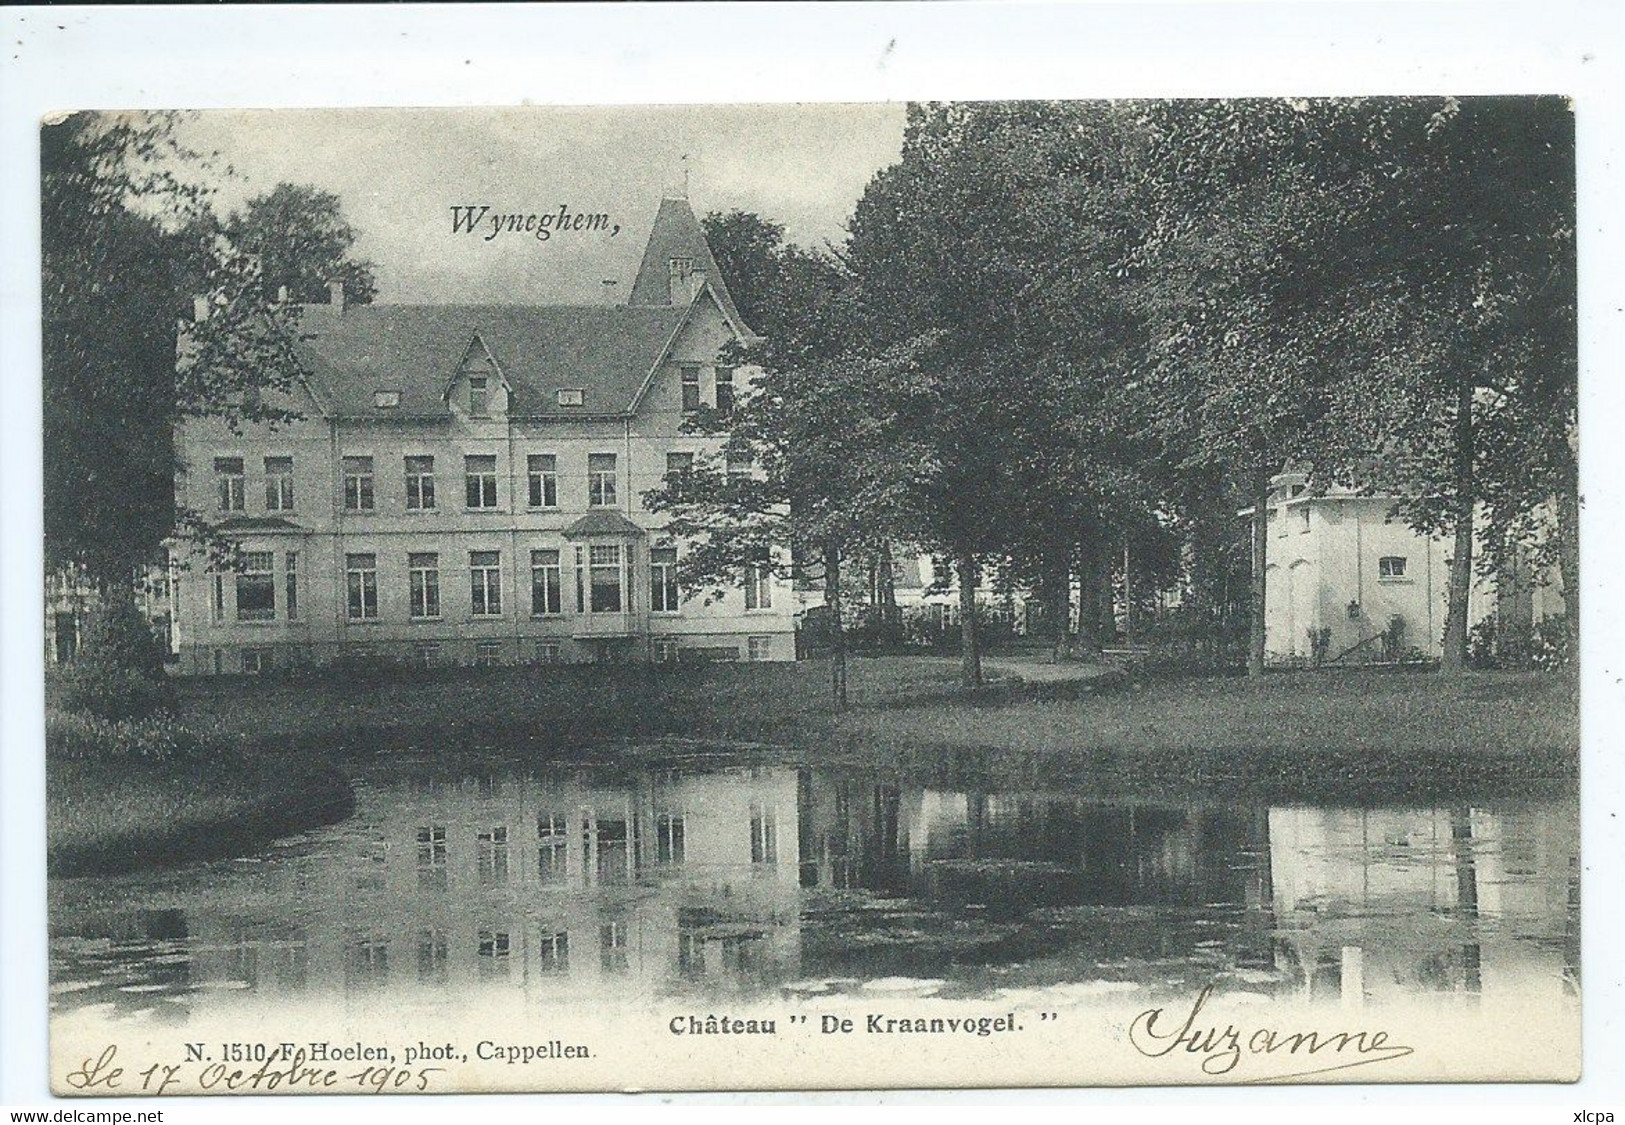 Wijnegem  Wyneghem  Chateau "De Kraanvogel" Hoelen N 1510 - Wijnegem